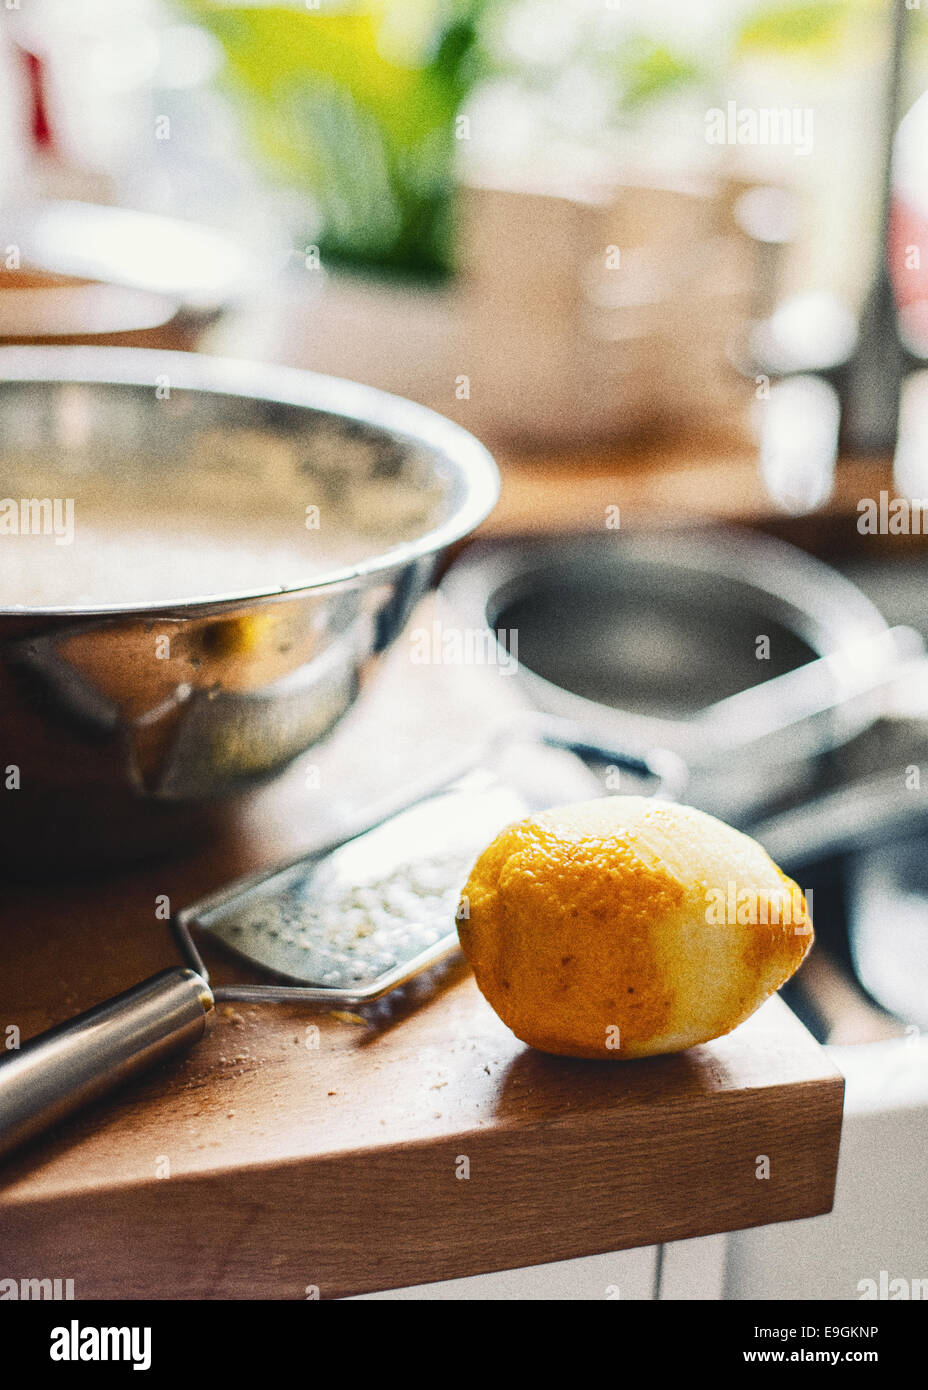 Le zeste de citron râpé pour la cuisson Banque D'Images